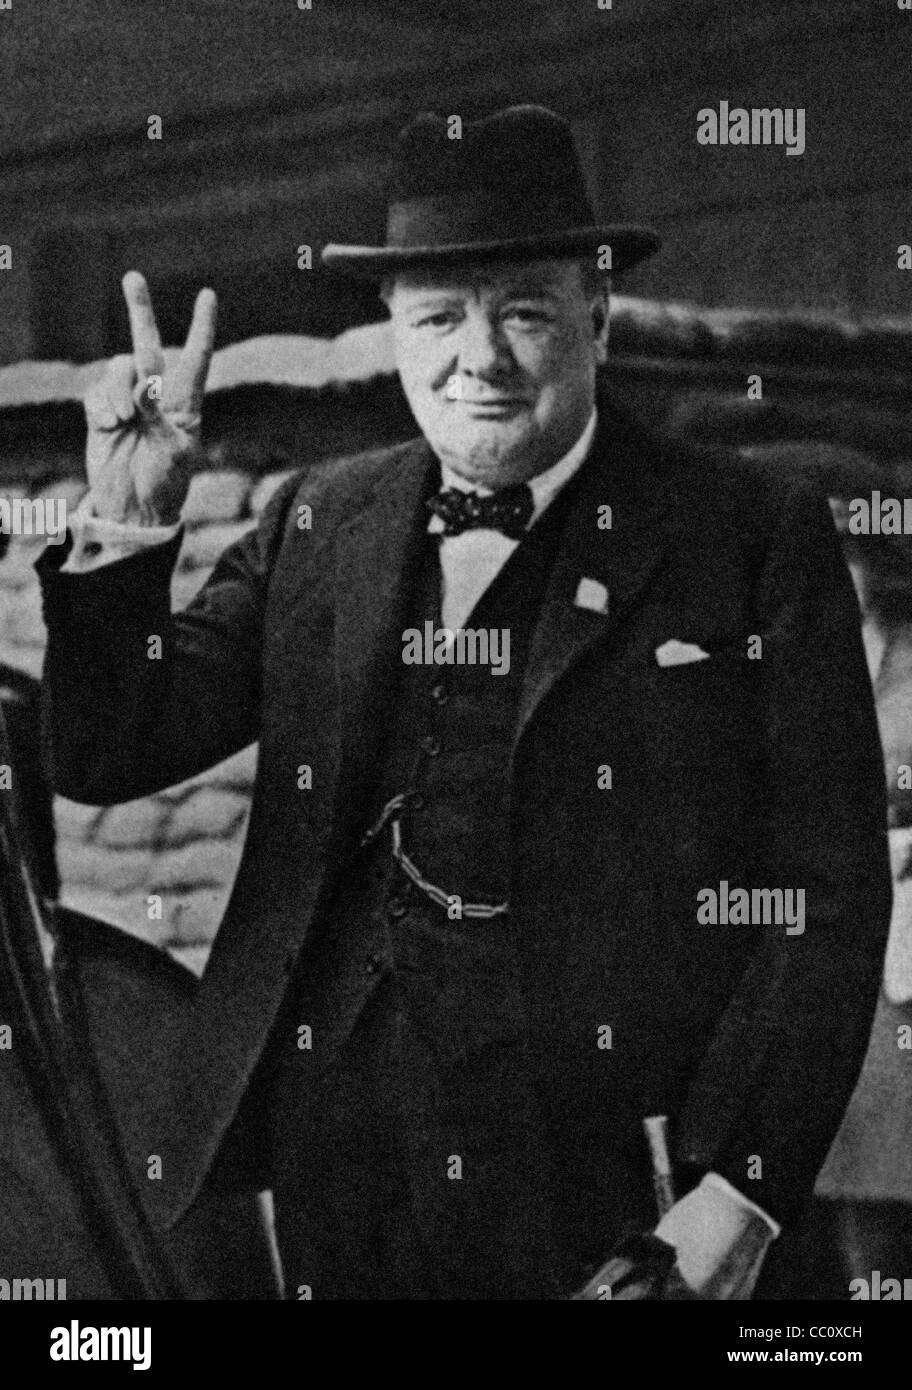 Chef de guerre britannique Winston Churchill avec son célèbre signe V de la victoire. Droit de la Presse Archives de presse Portrait Portrait (anciennement appelé Service Bureau) 1941 libre Banque D'Images